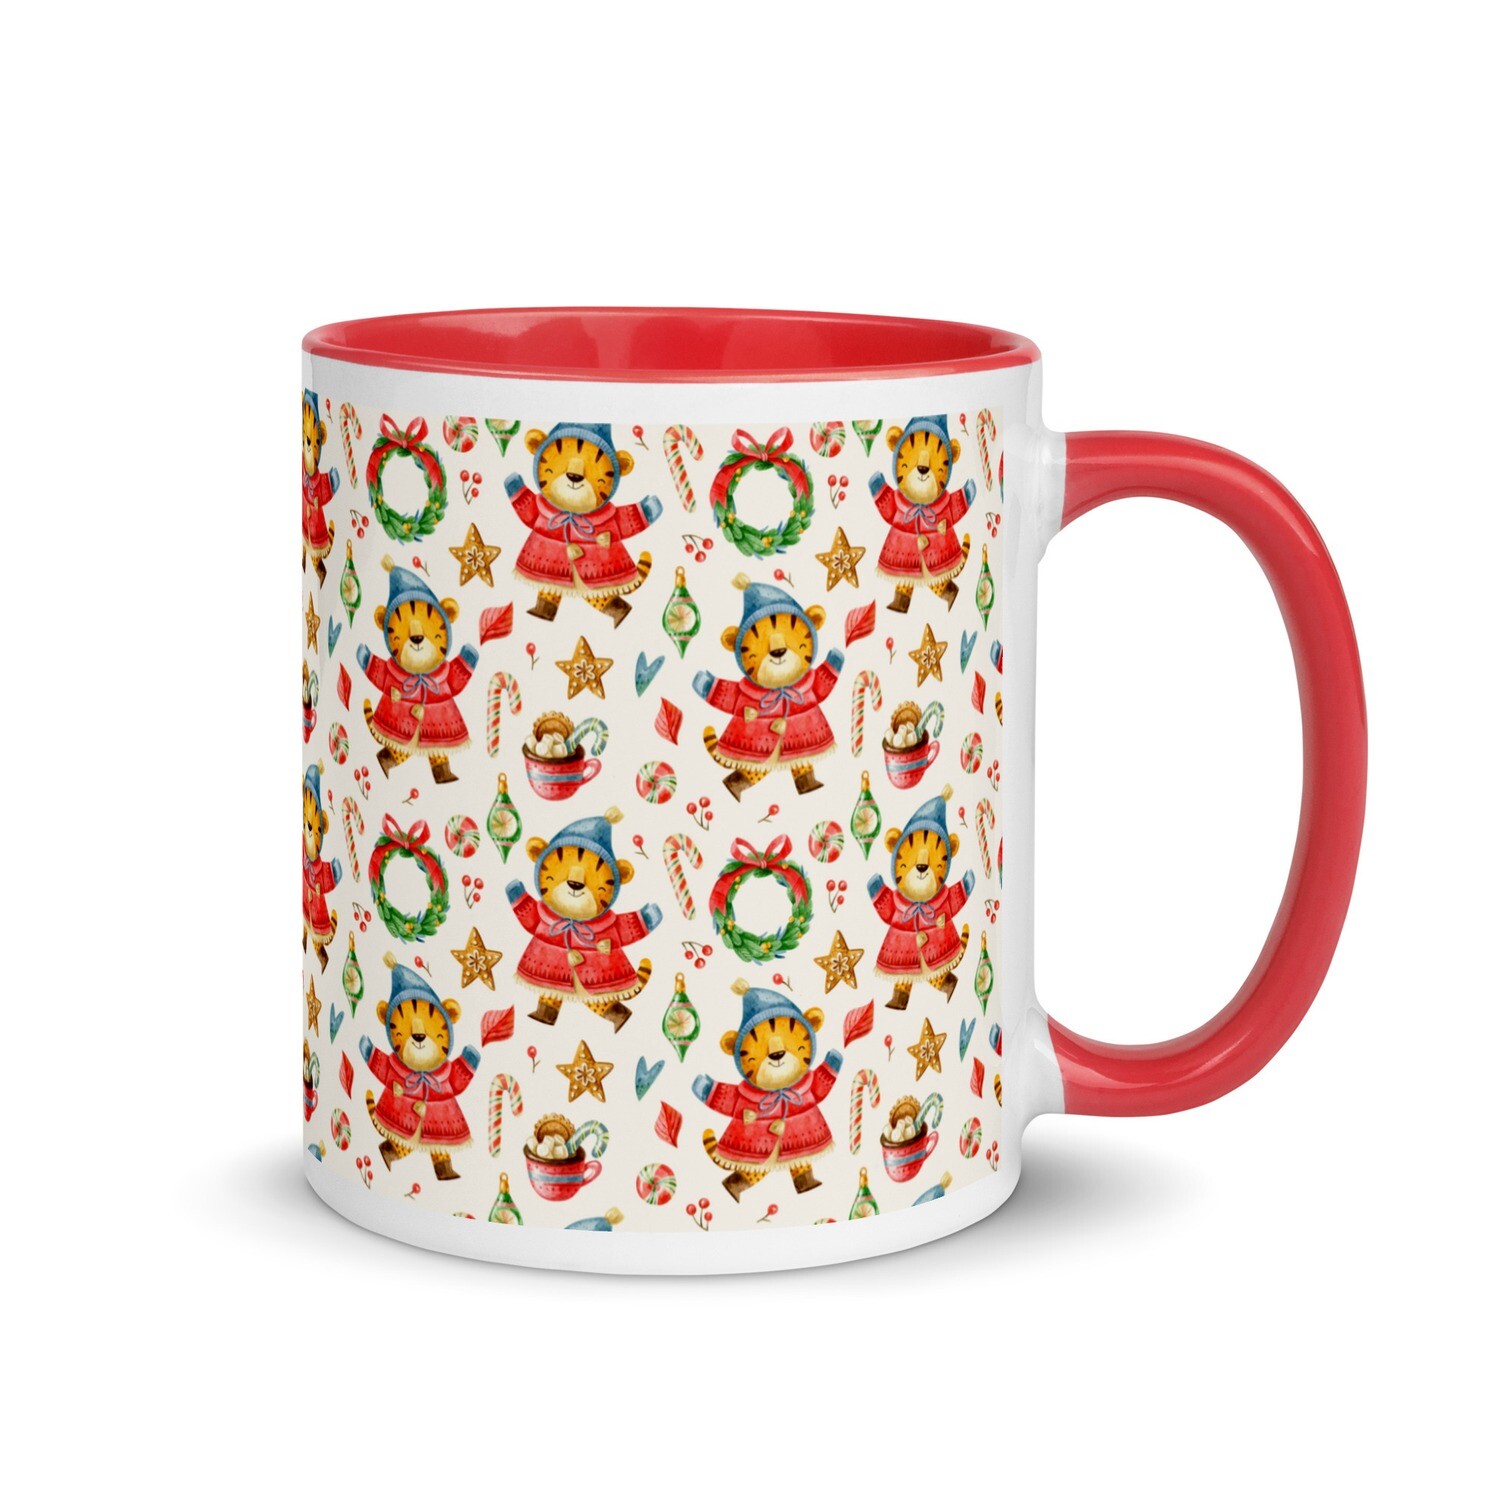 Festive mug - Design No. 1